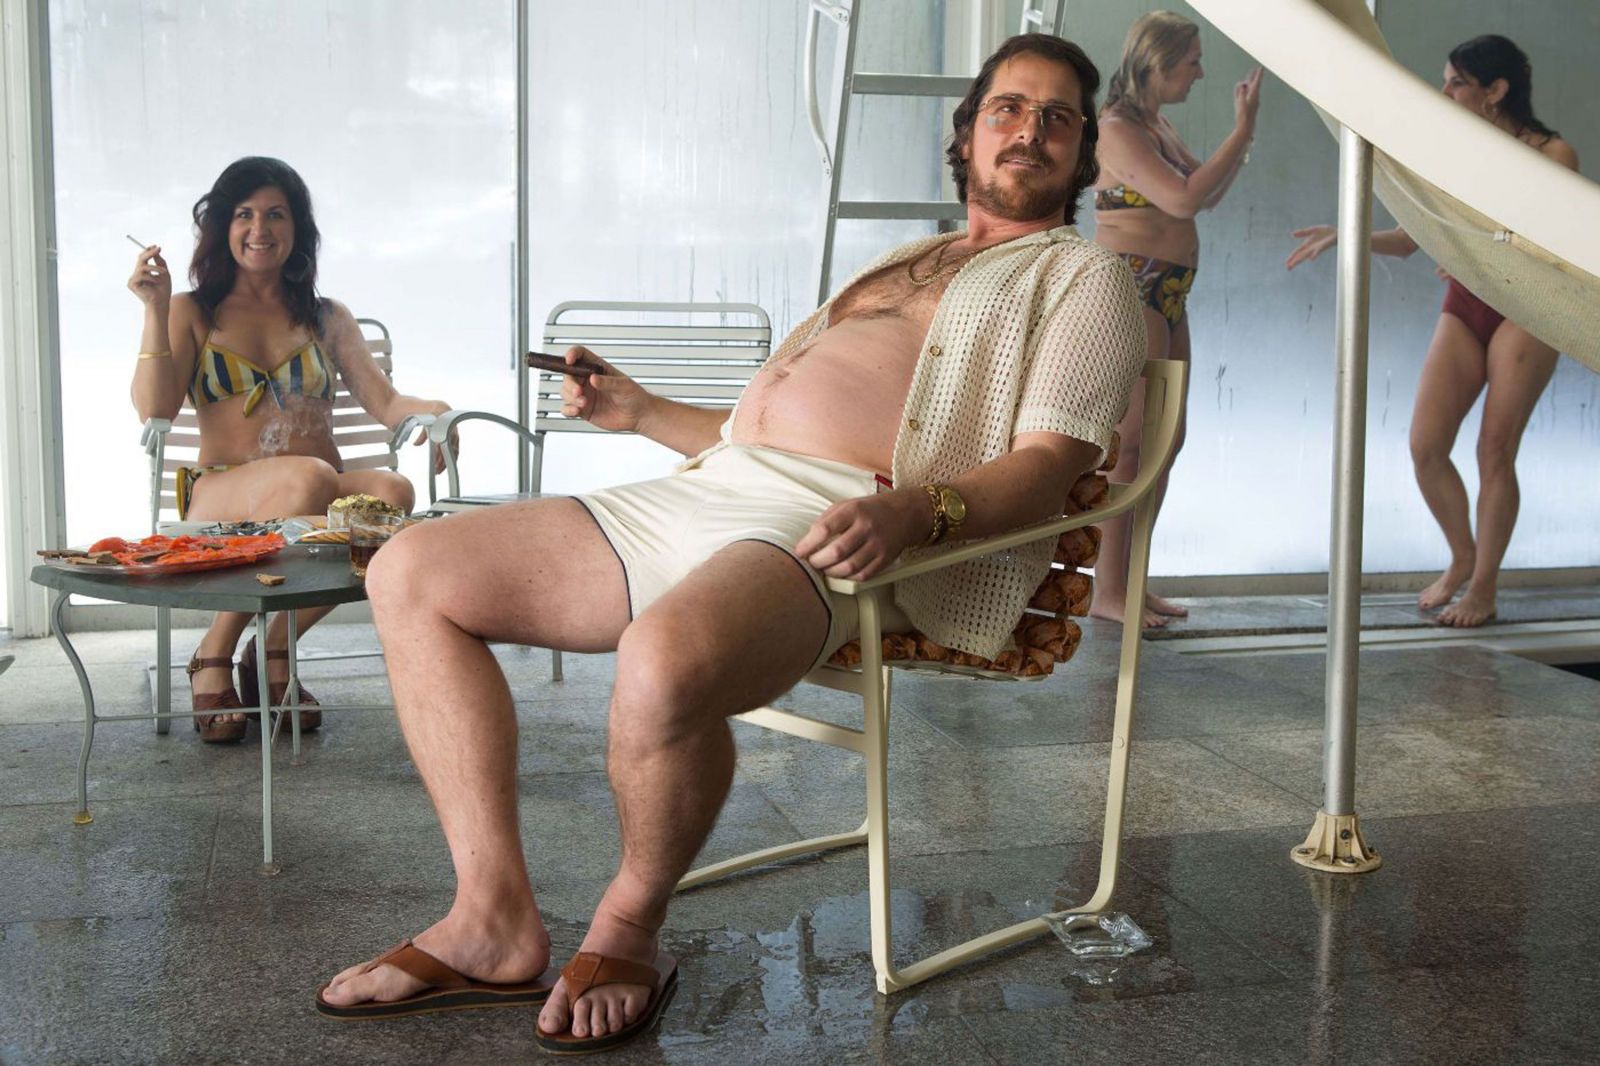 Christian Bale za posledných 20 rokov pribral a schudol viac ako 250 kilogramov. Ktoré roly boli najťažšie a ako to robí?